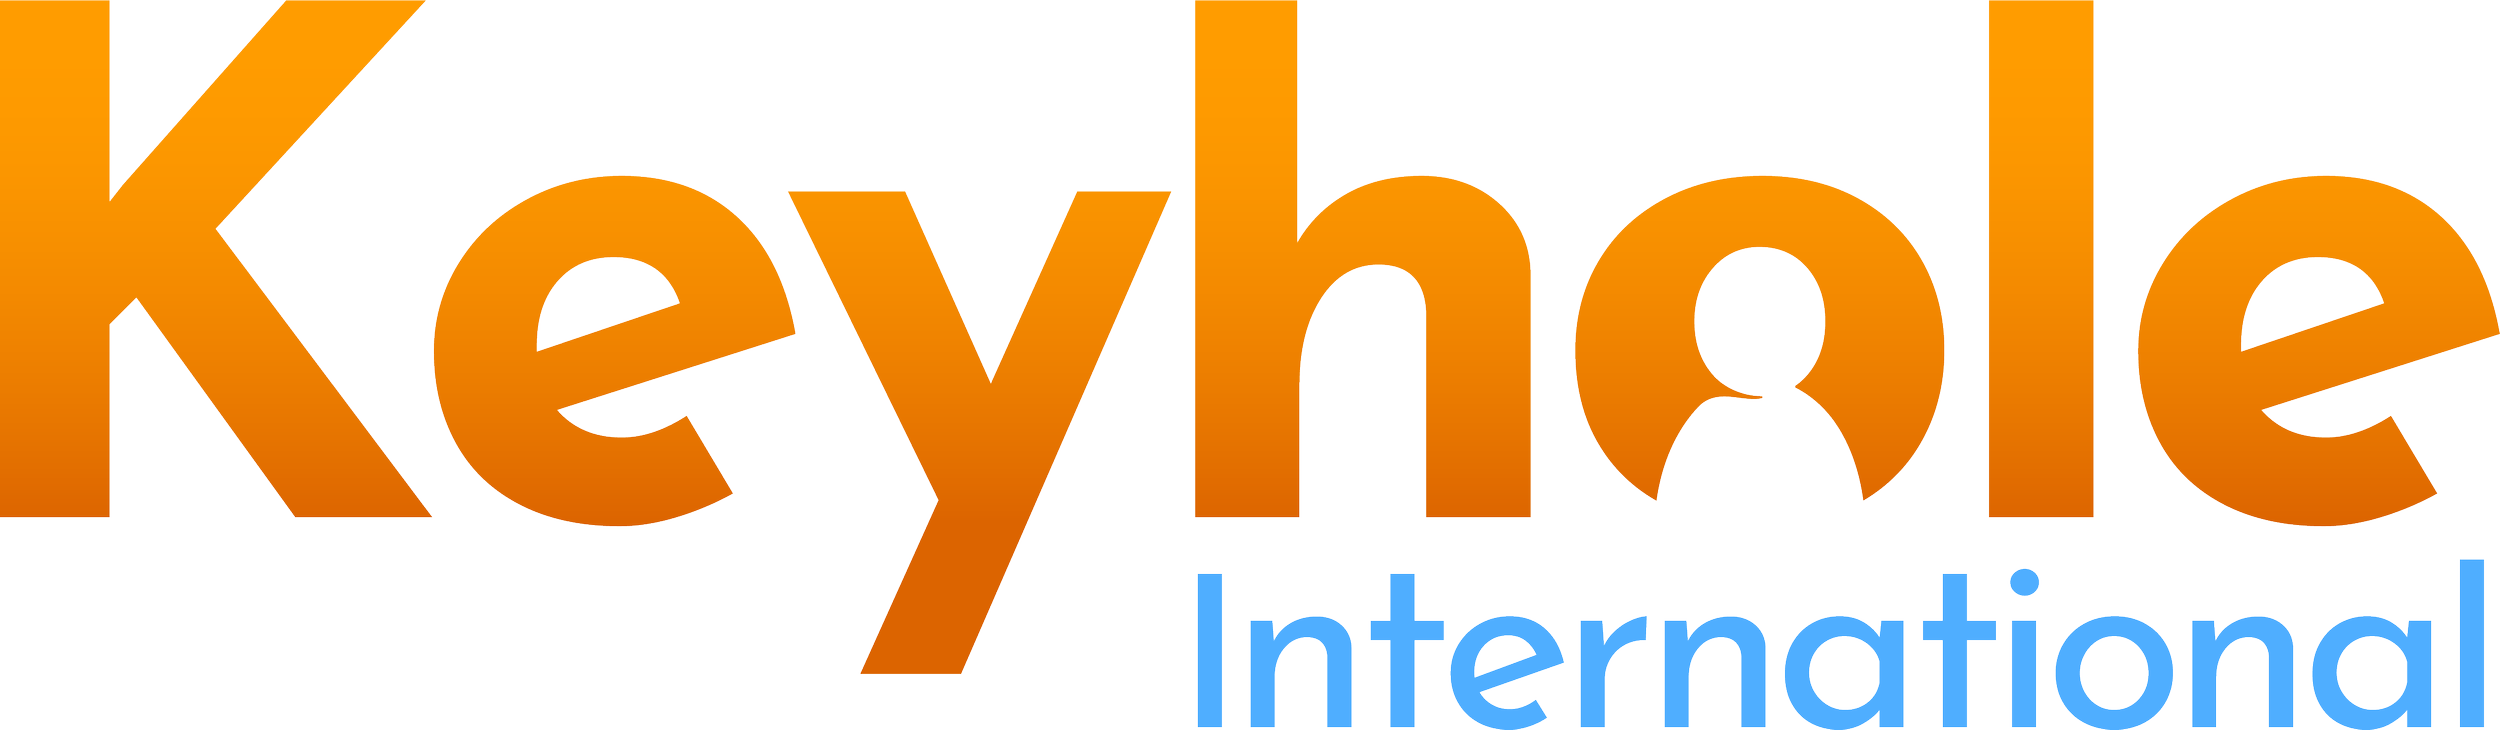 Keyhole International